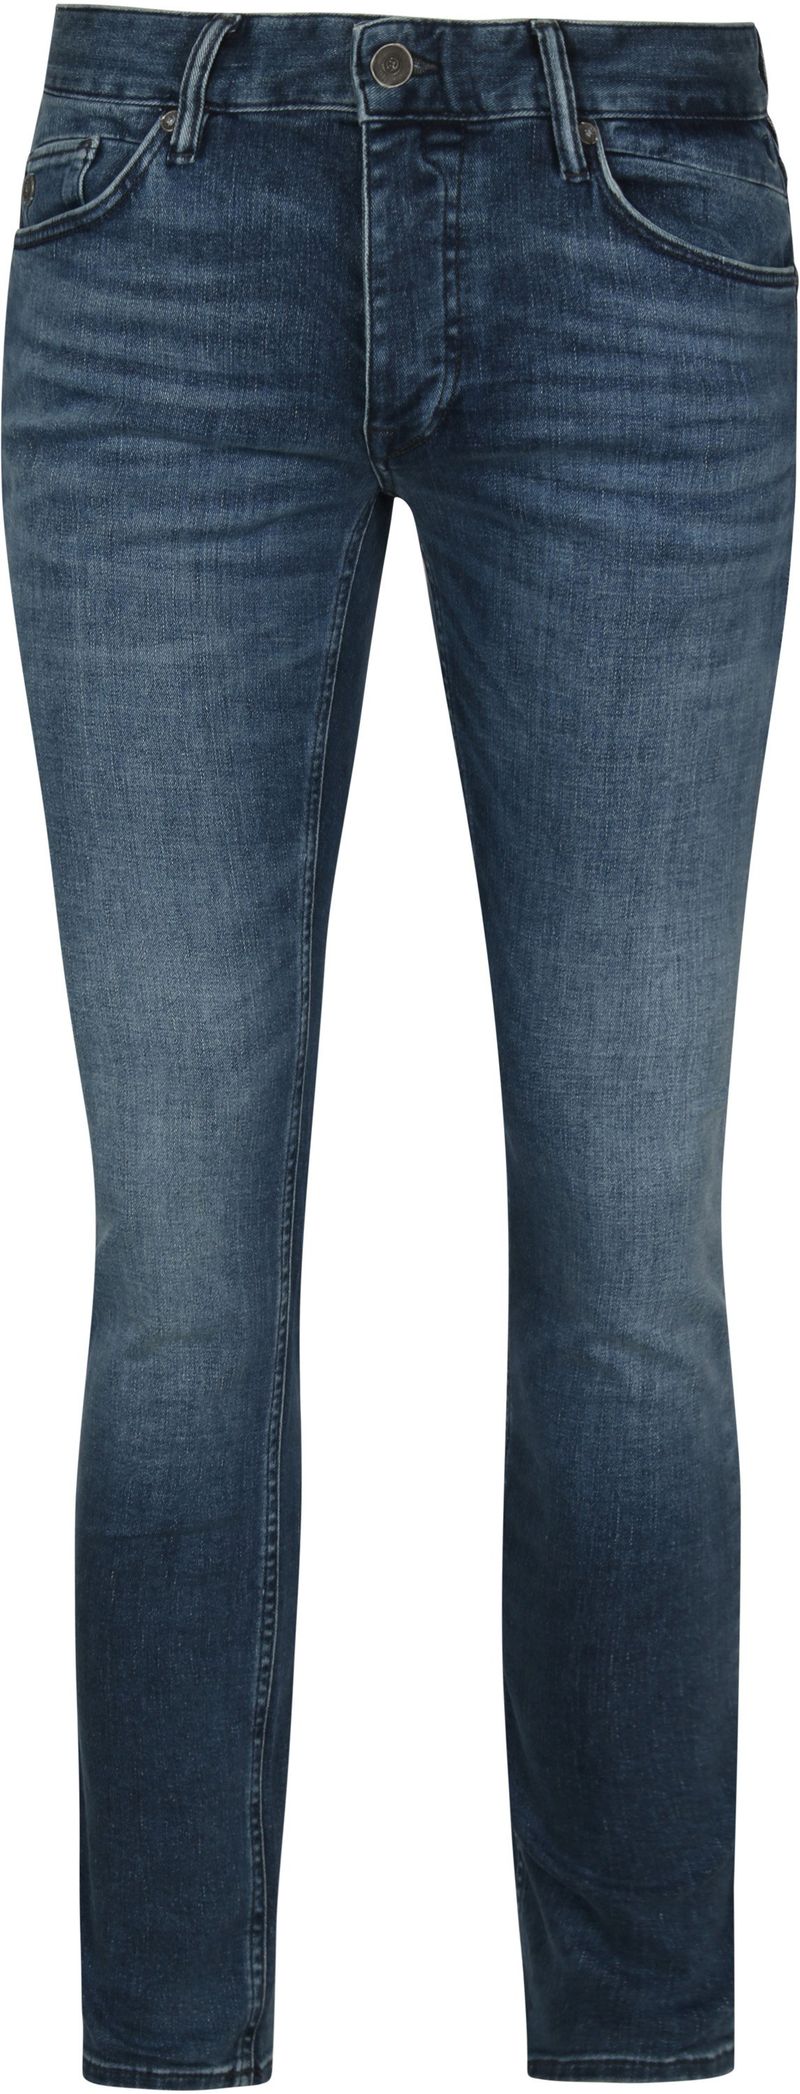 Cast Iron Riser Jeans ATB Blau - Größe W 31 - L 34 von Cast Iron